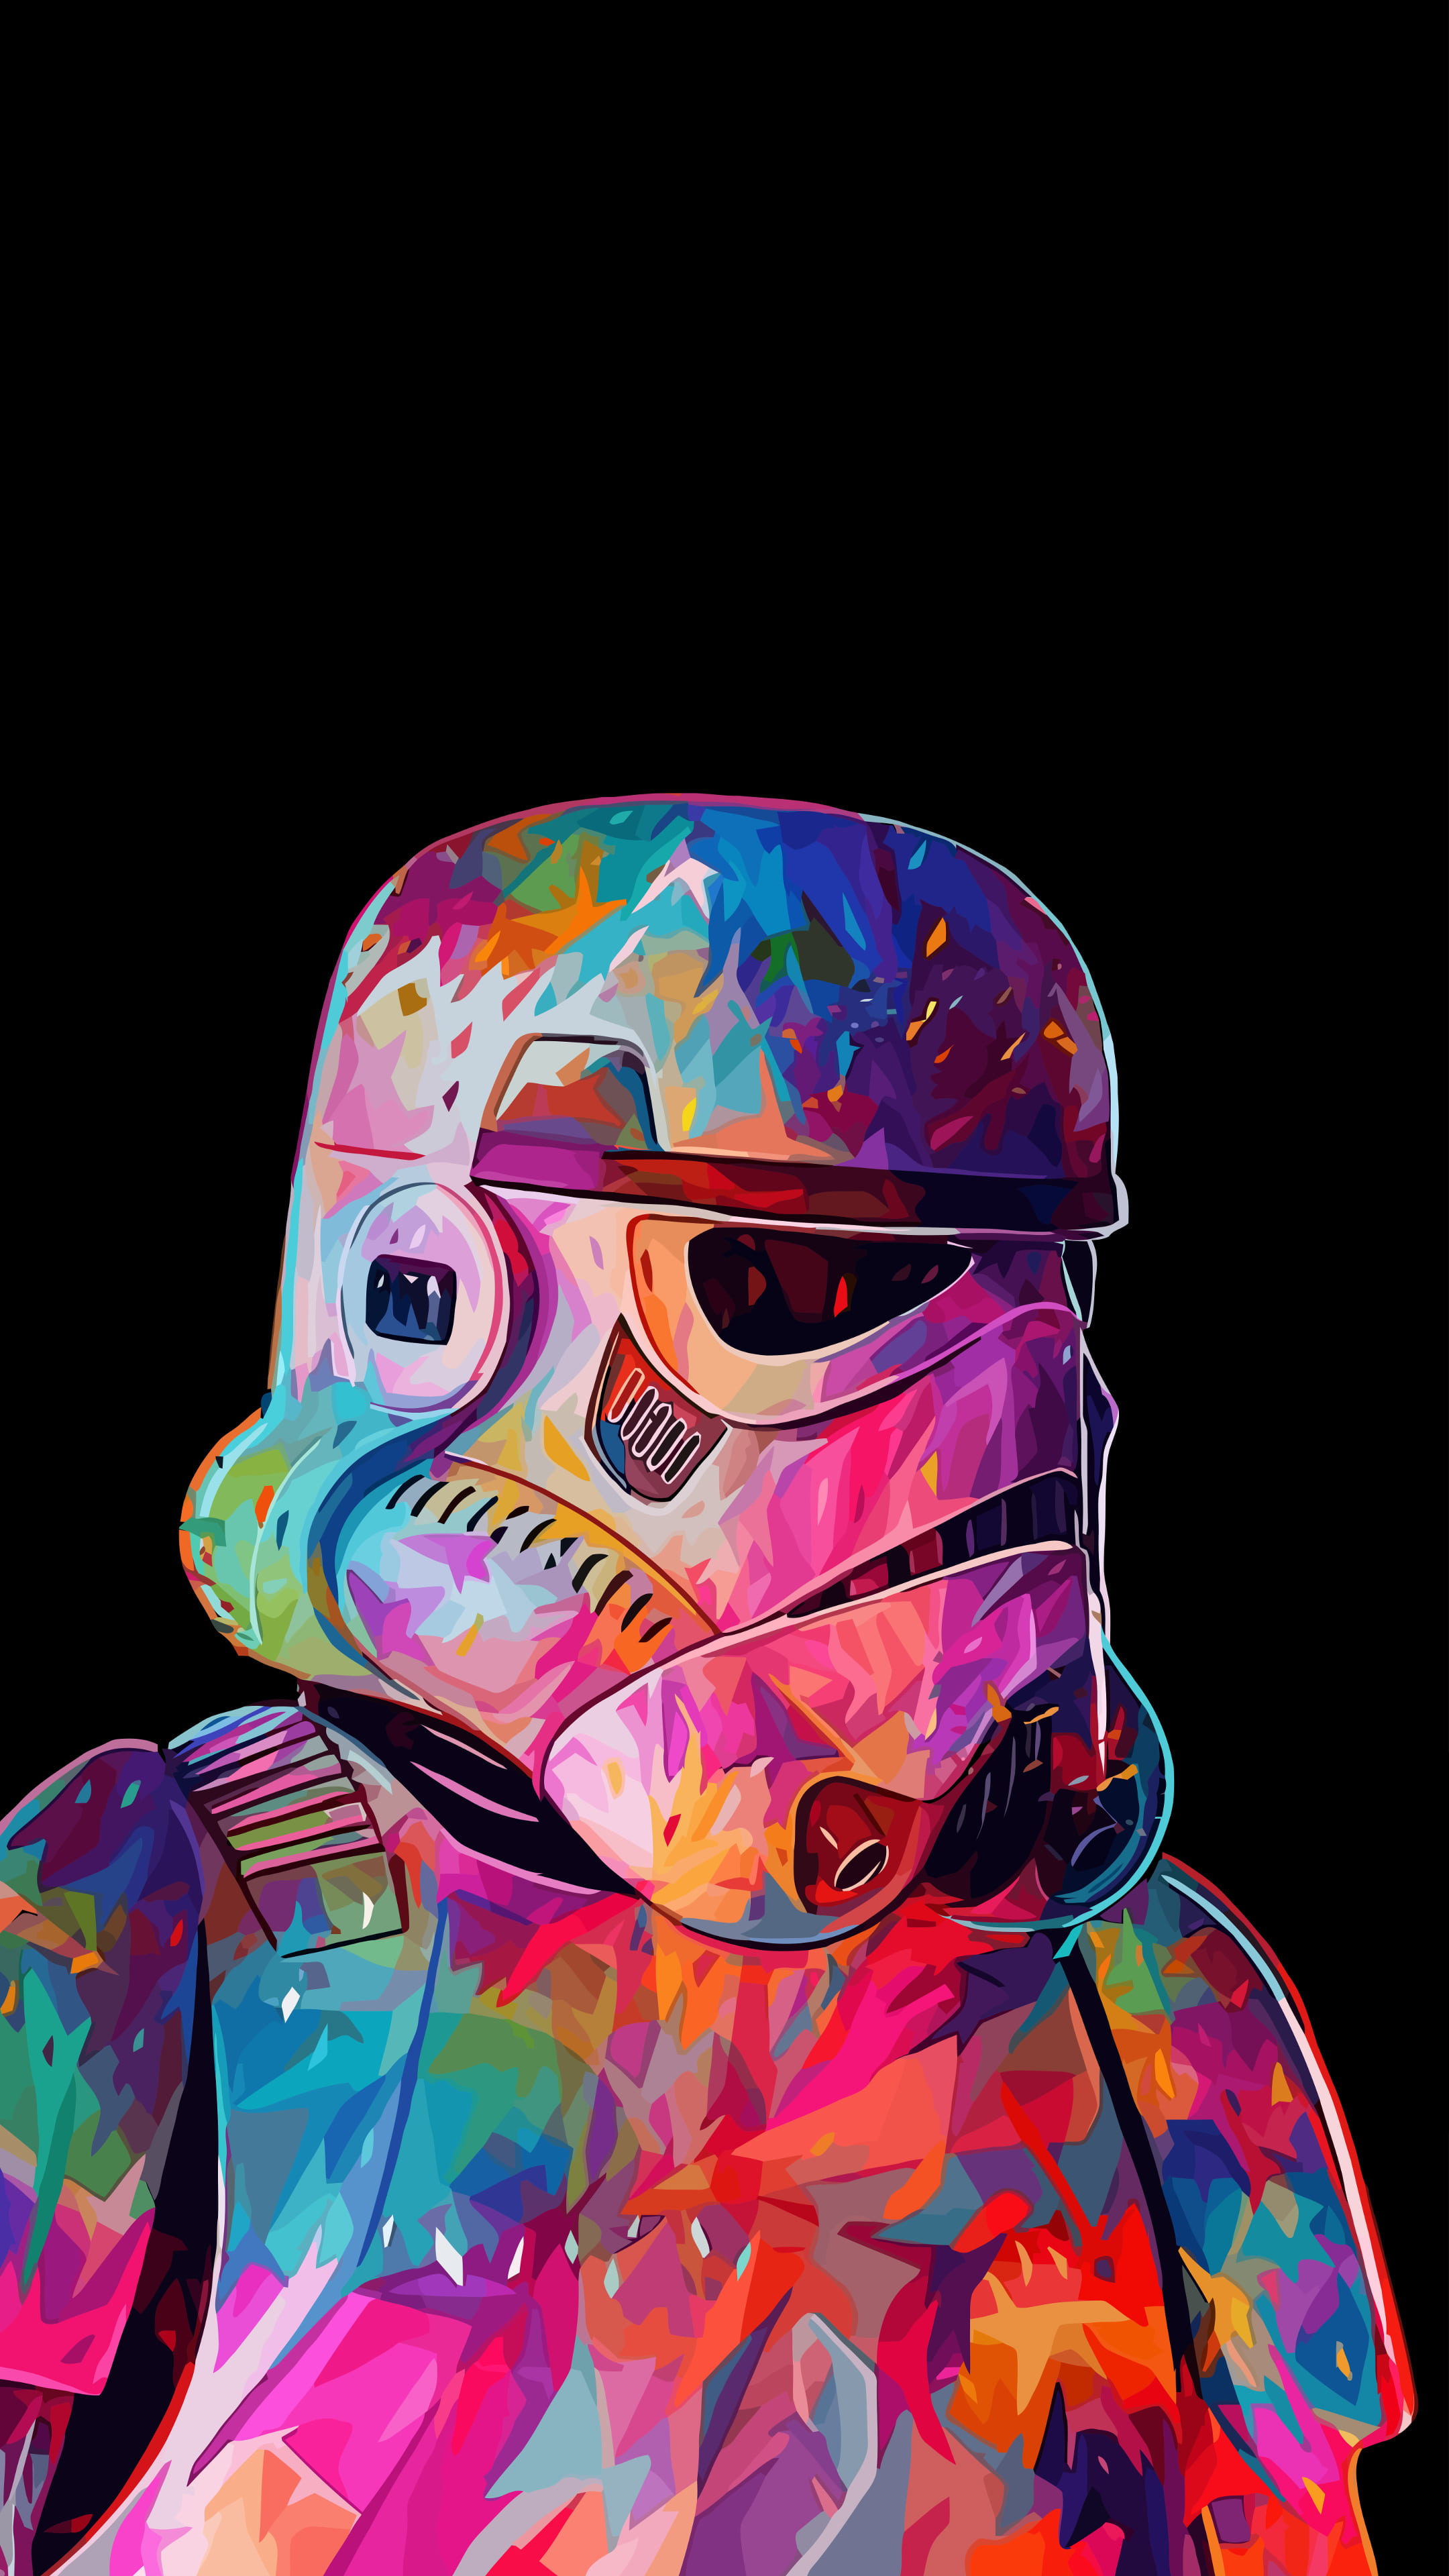 General 2160x3840 simple background portrait display digital art movie characters helmet Star Wars minimalism black background soldier stormtrooper